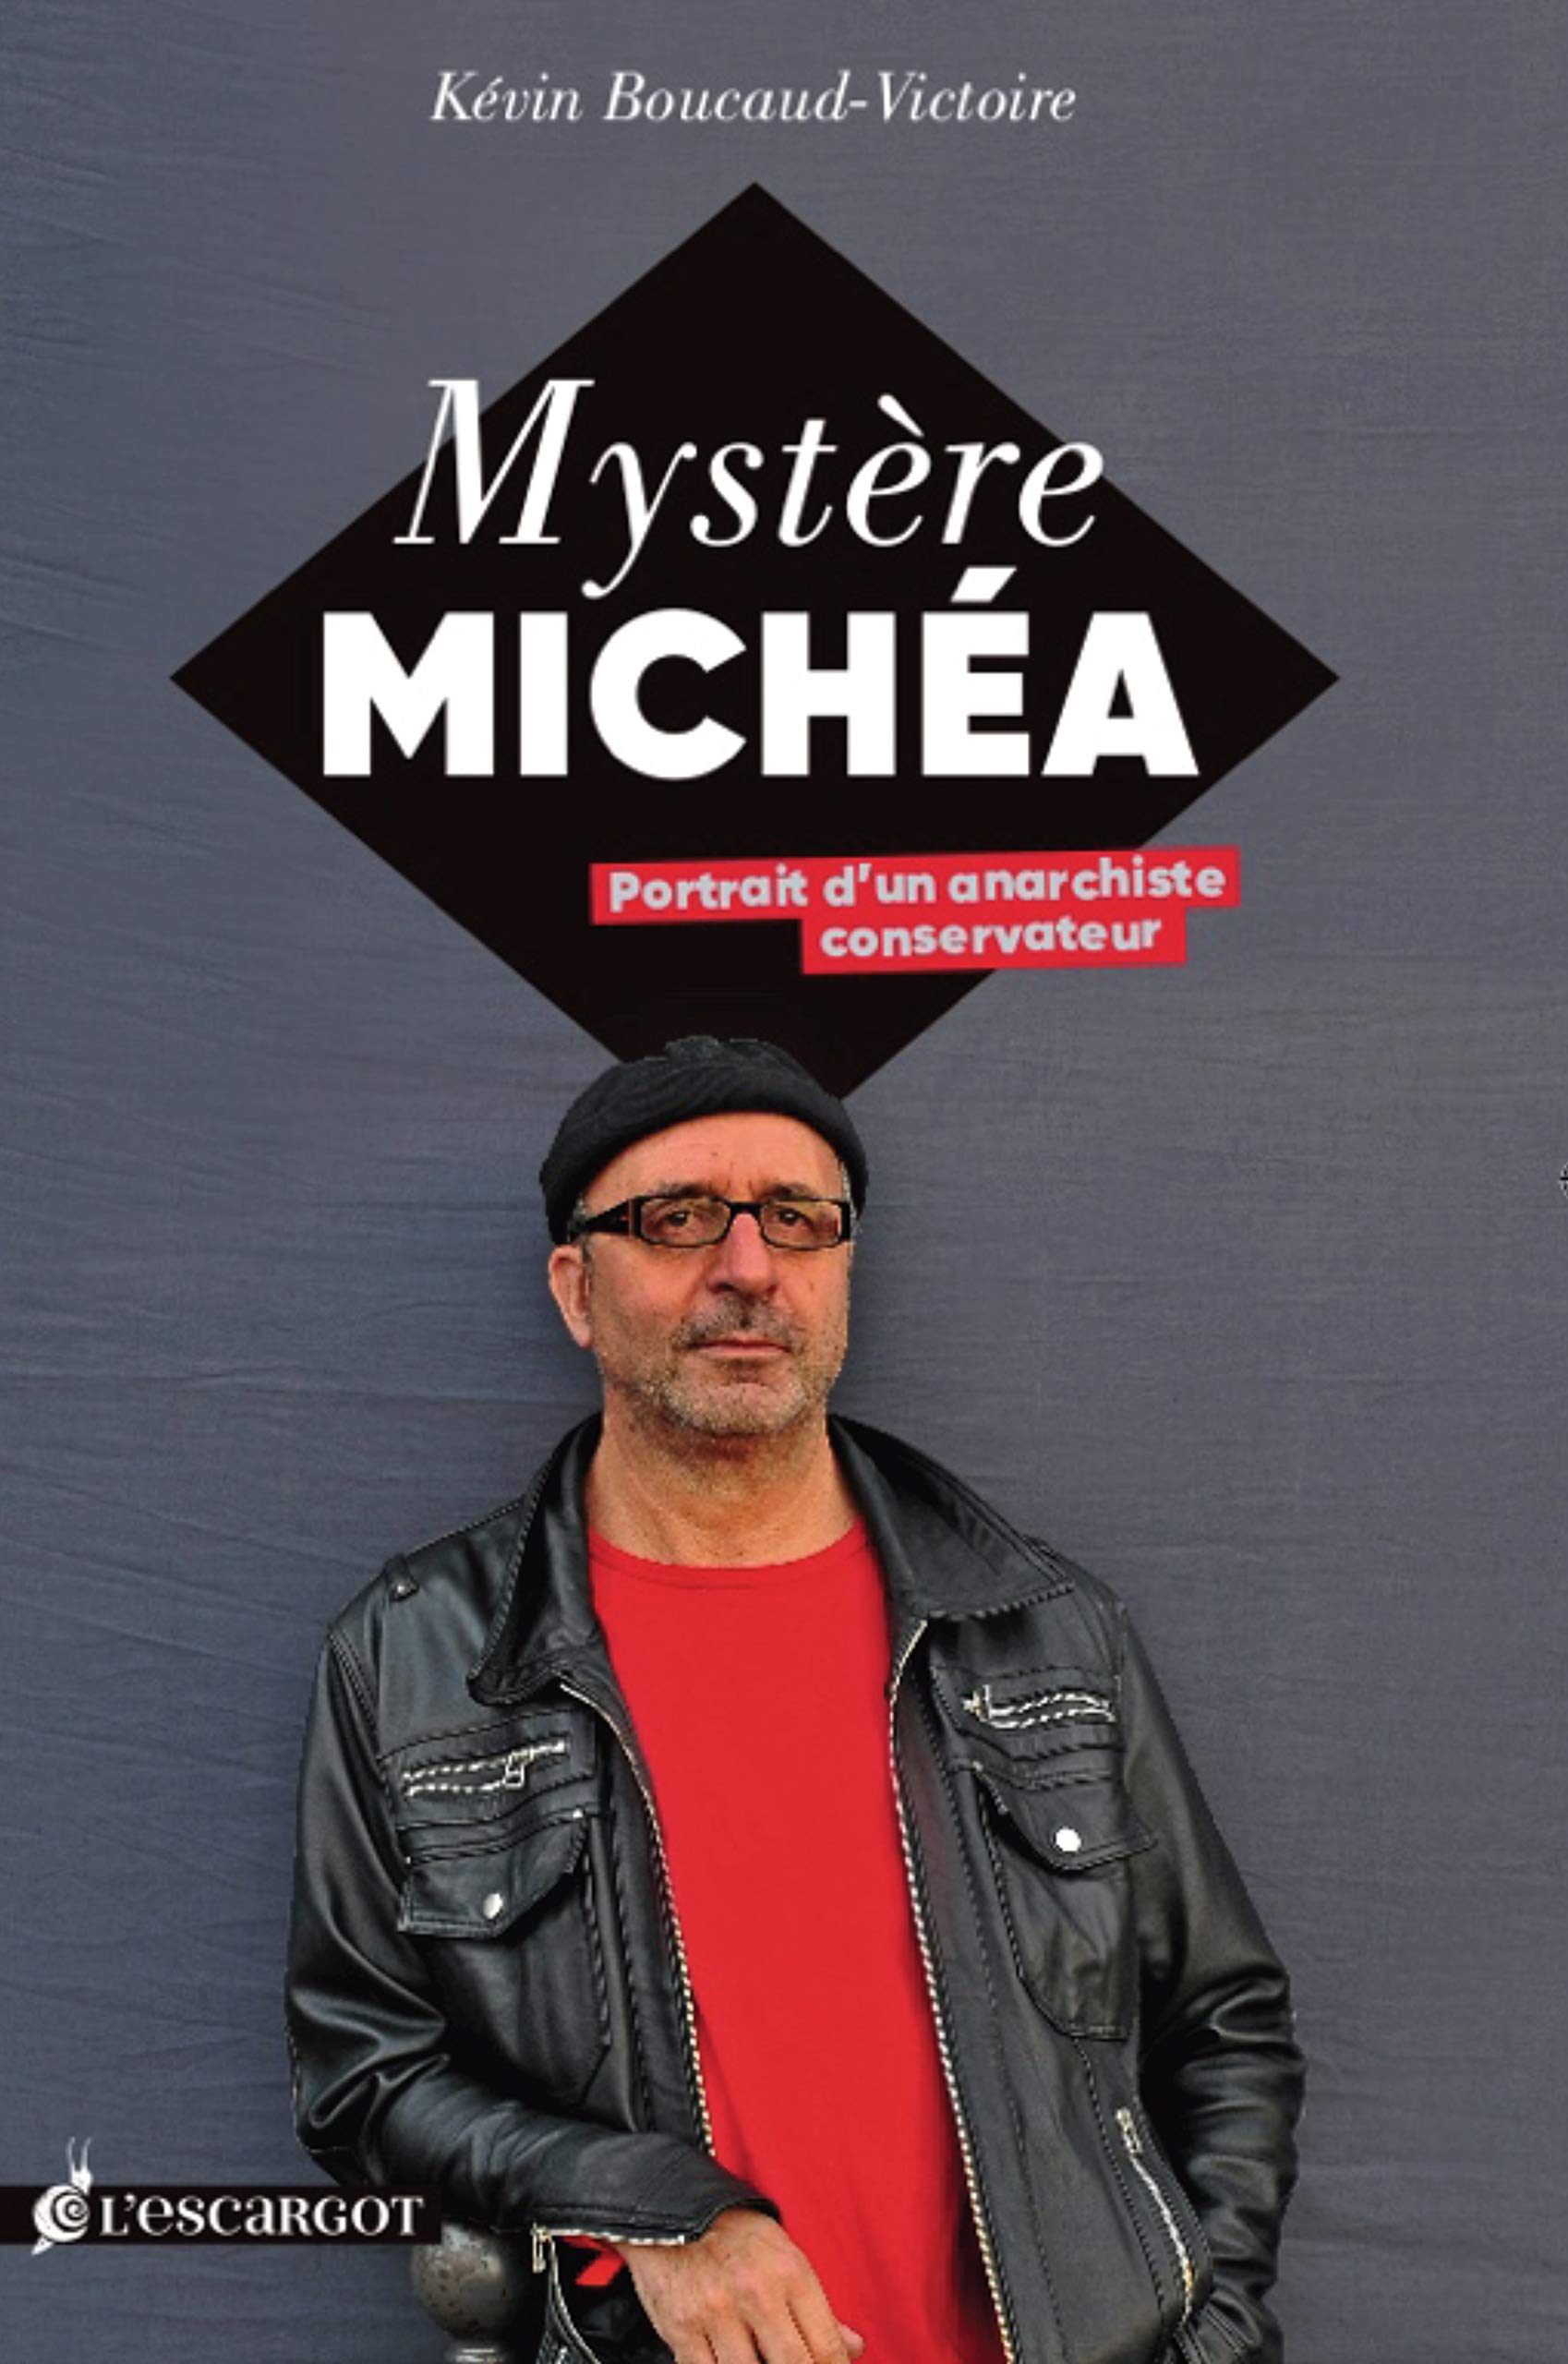 Le mystère Michéa. Portrait d’un anarchiste conservateur, Kevin Boucaud-Victoire, L’Escargot, 128 p., 15 €.